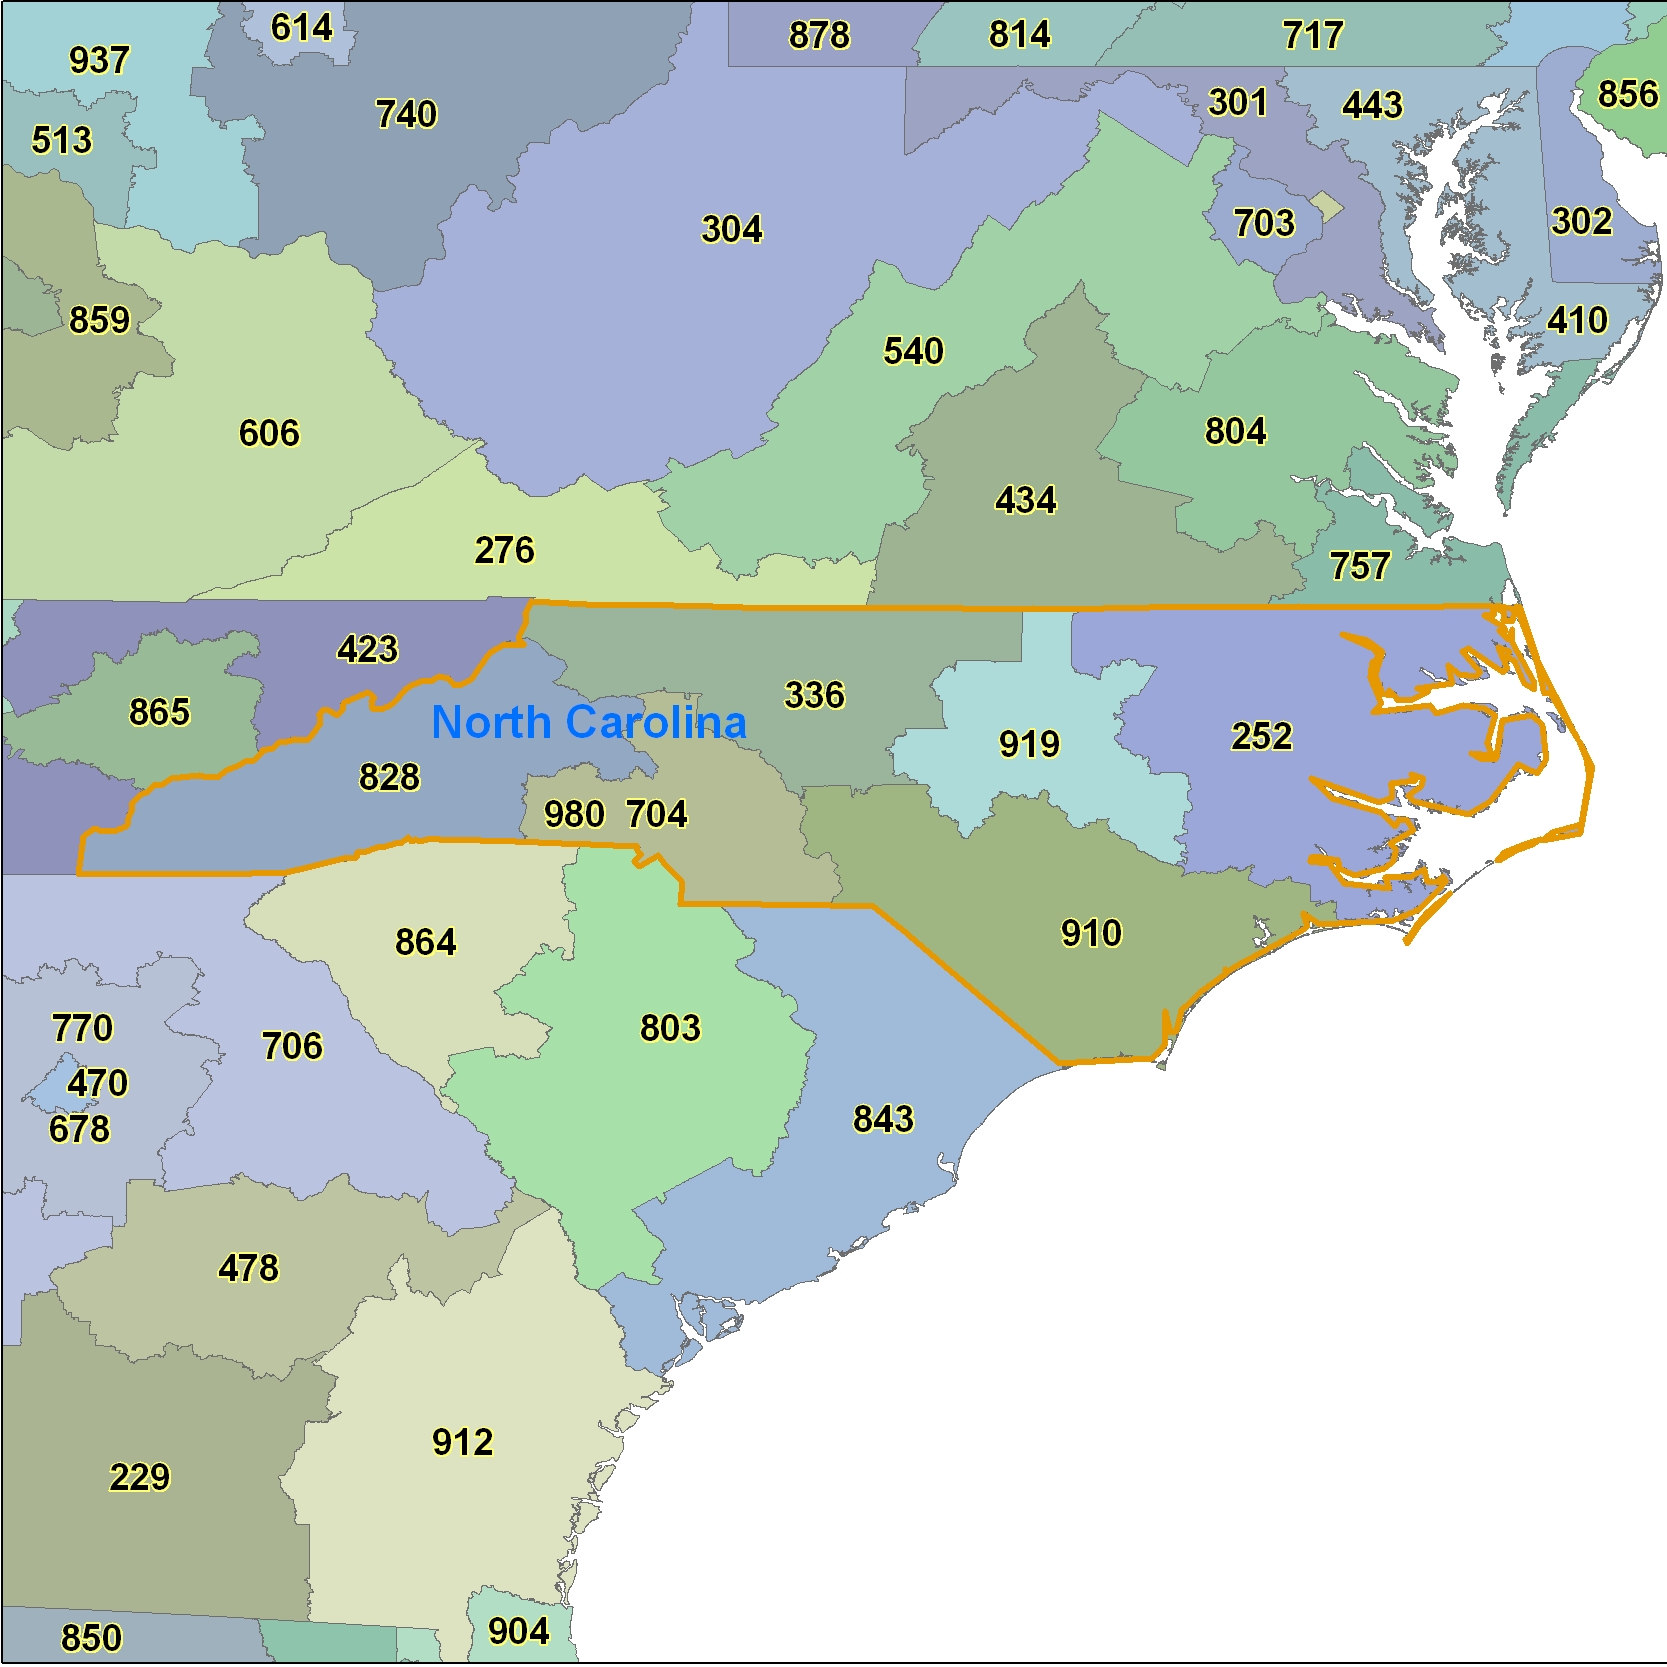 North Carolina Area Code Maps North Carolina Telephone Area Code Maps Free North Carolina Area